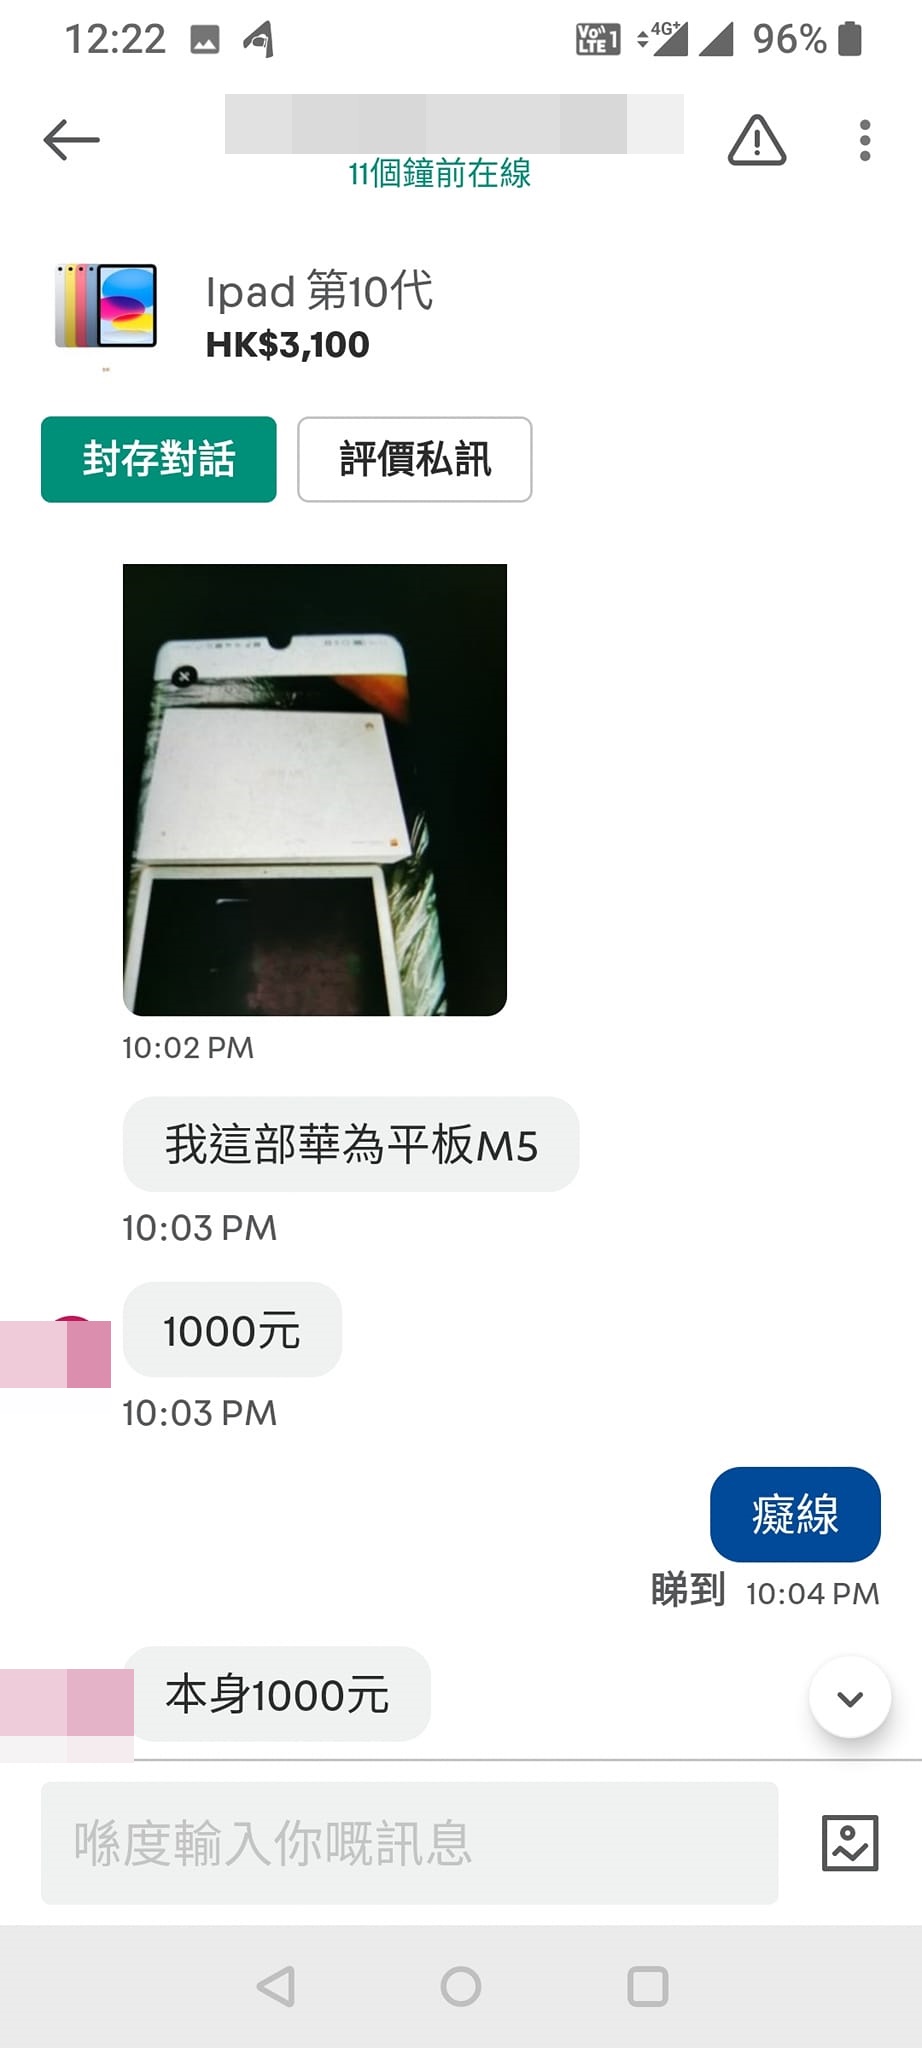 對方上傳另一品牌的平板電腦照片，並指其原本售價為1000元。「Carousell 乞衣+X客關注組」FB